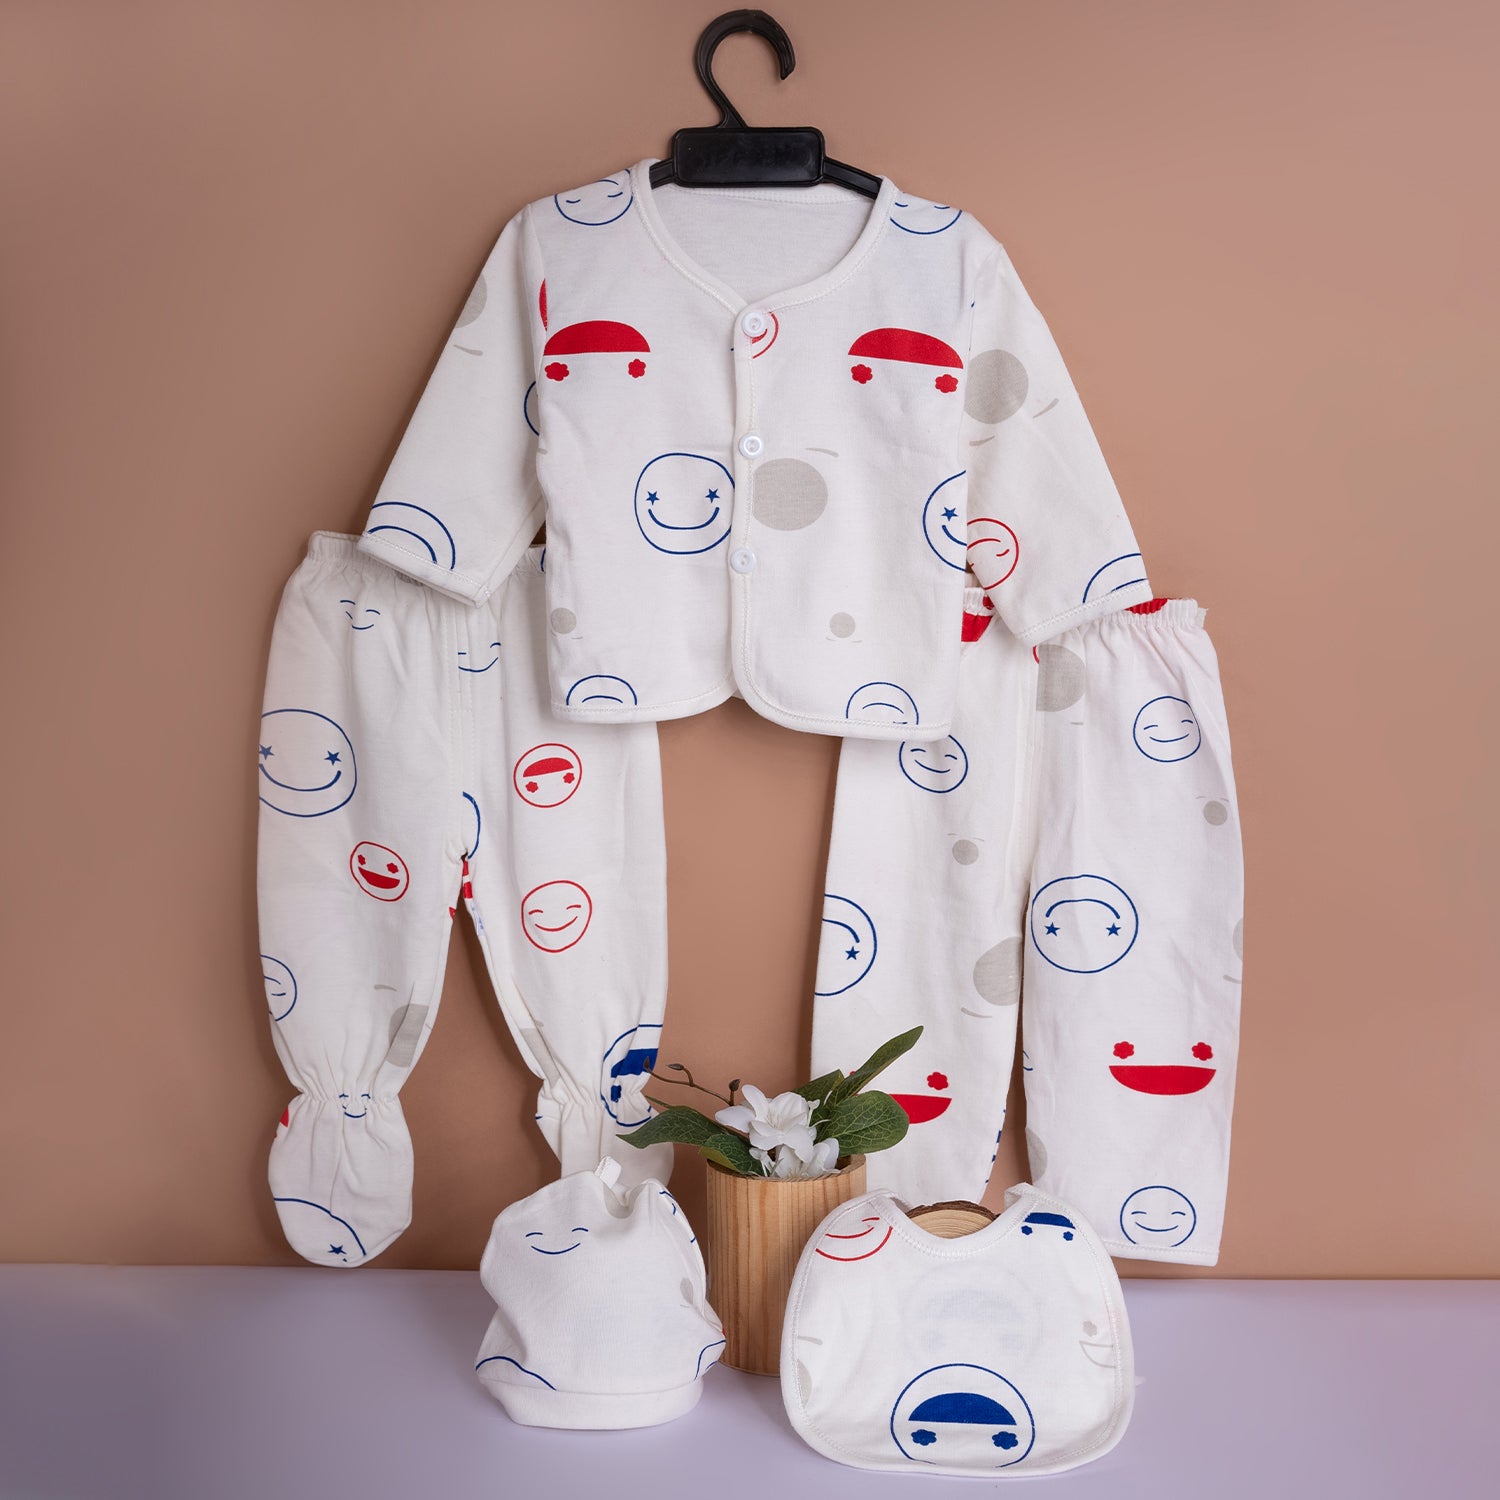 Baby Moo Smiley Print Cap Bib Pyjamas 5 Pcs Clothing Gift Set - White